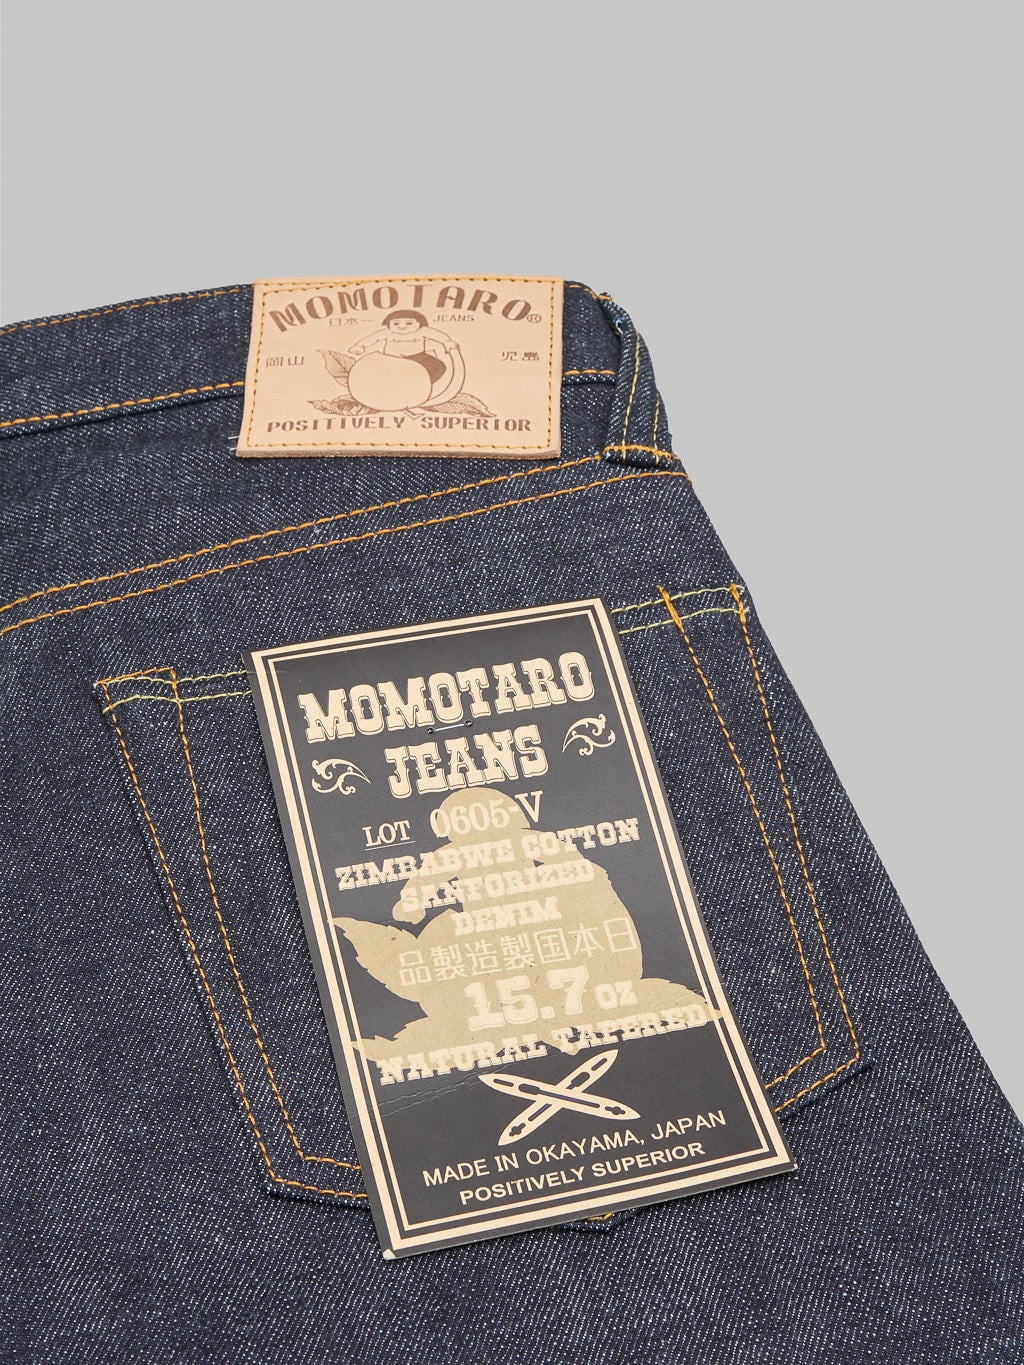 Momotaro 0605V Natural Tapered Jeans pocket flasher